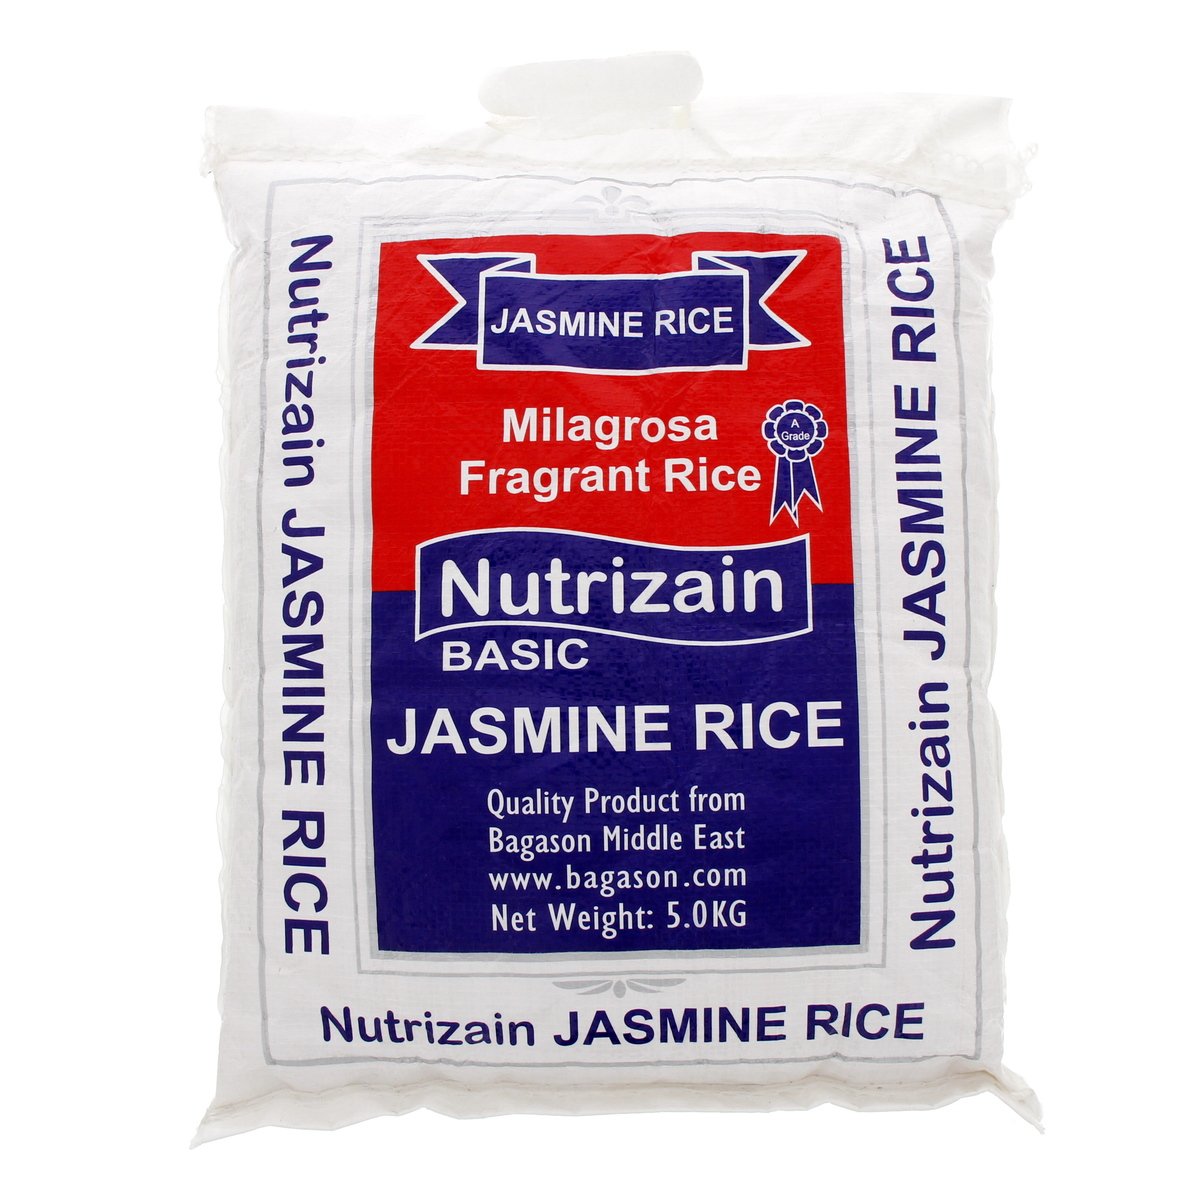 Nutrizain Jasmine Rice Basic 5 kg